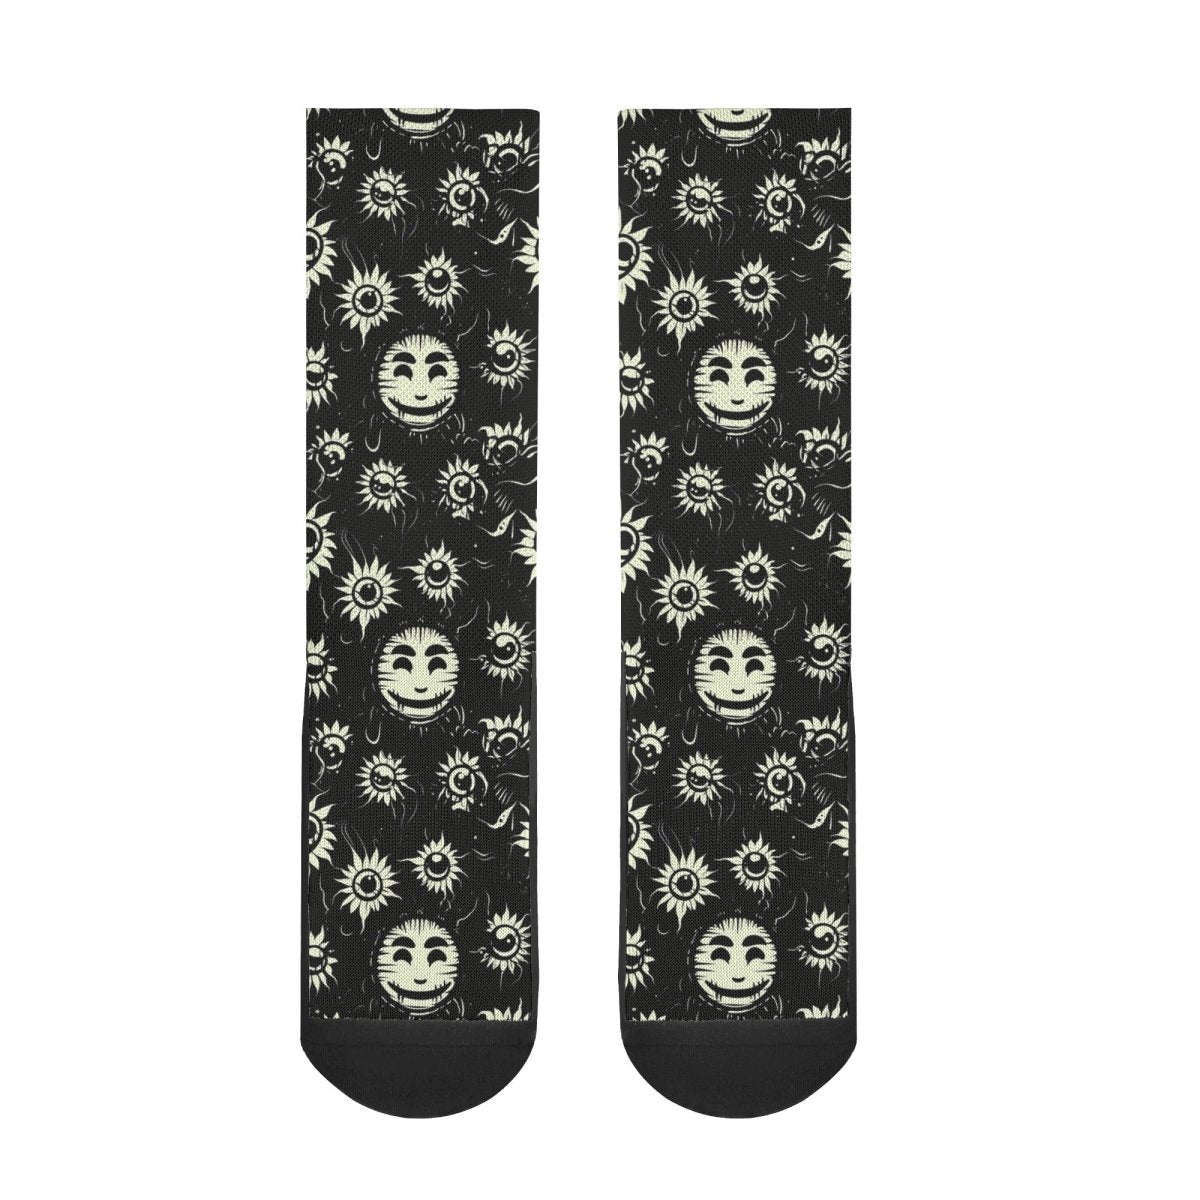 Smiley High Socks - Mainly High